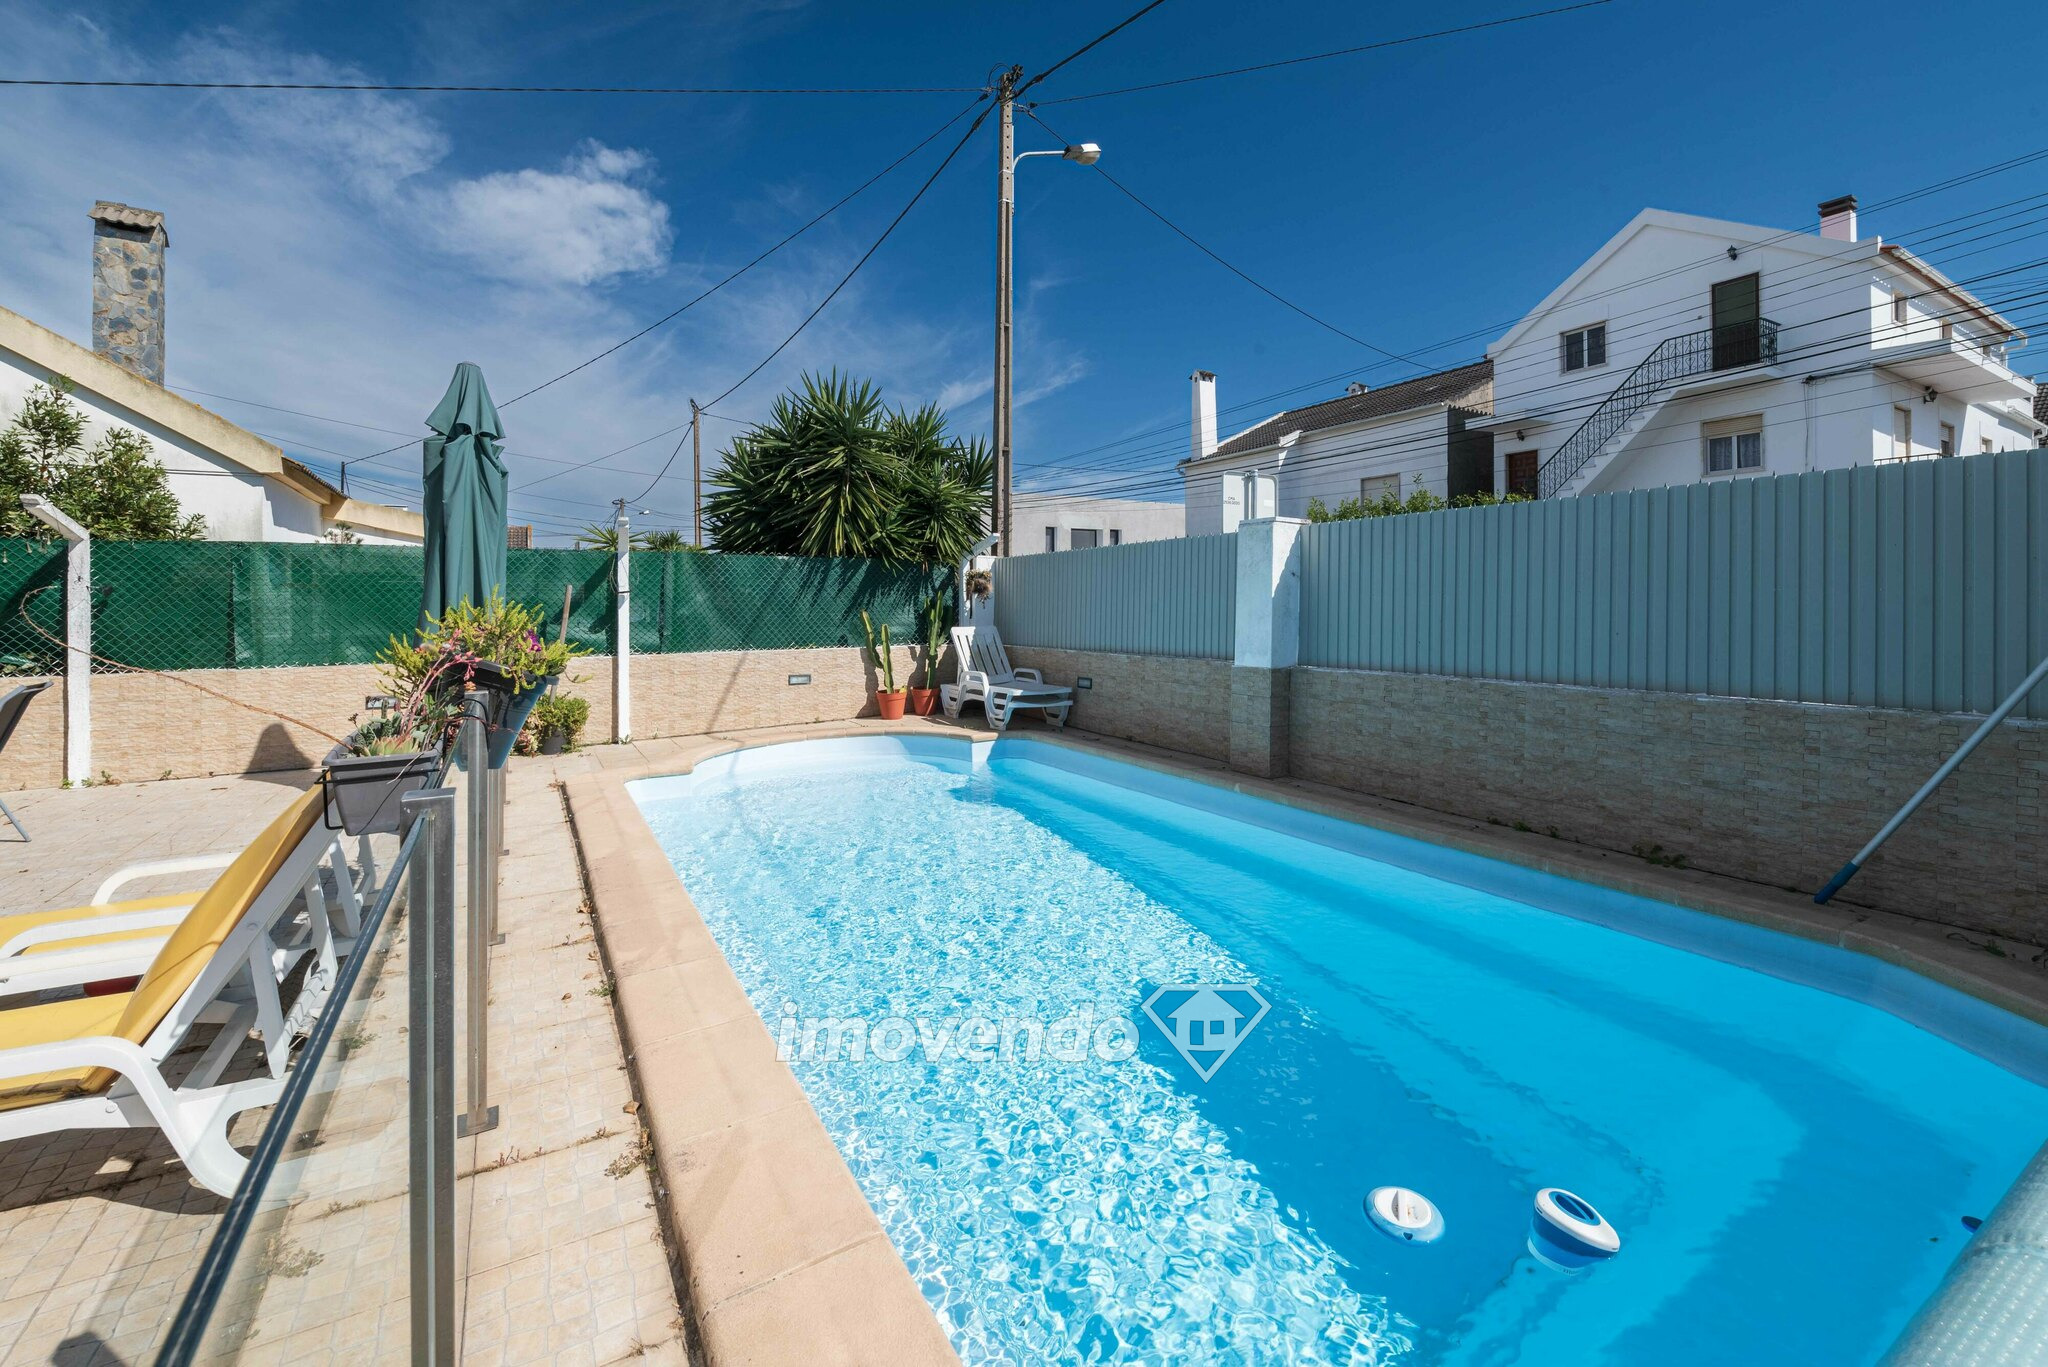 Moradia isolada T2+1, com piscina e terraço, na Charneca da Caparica